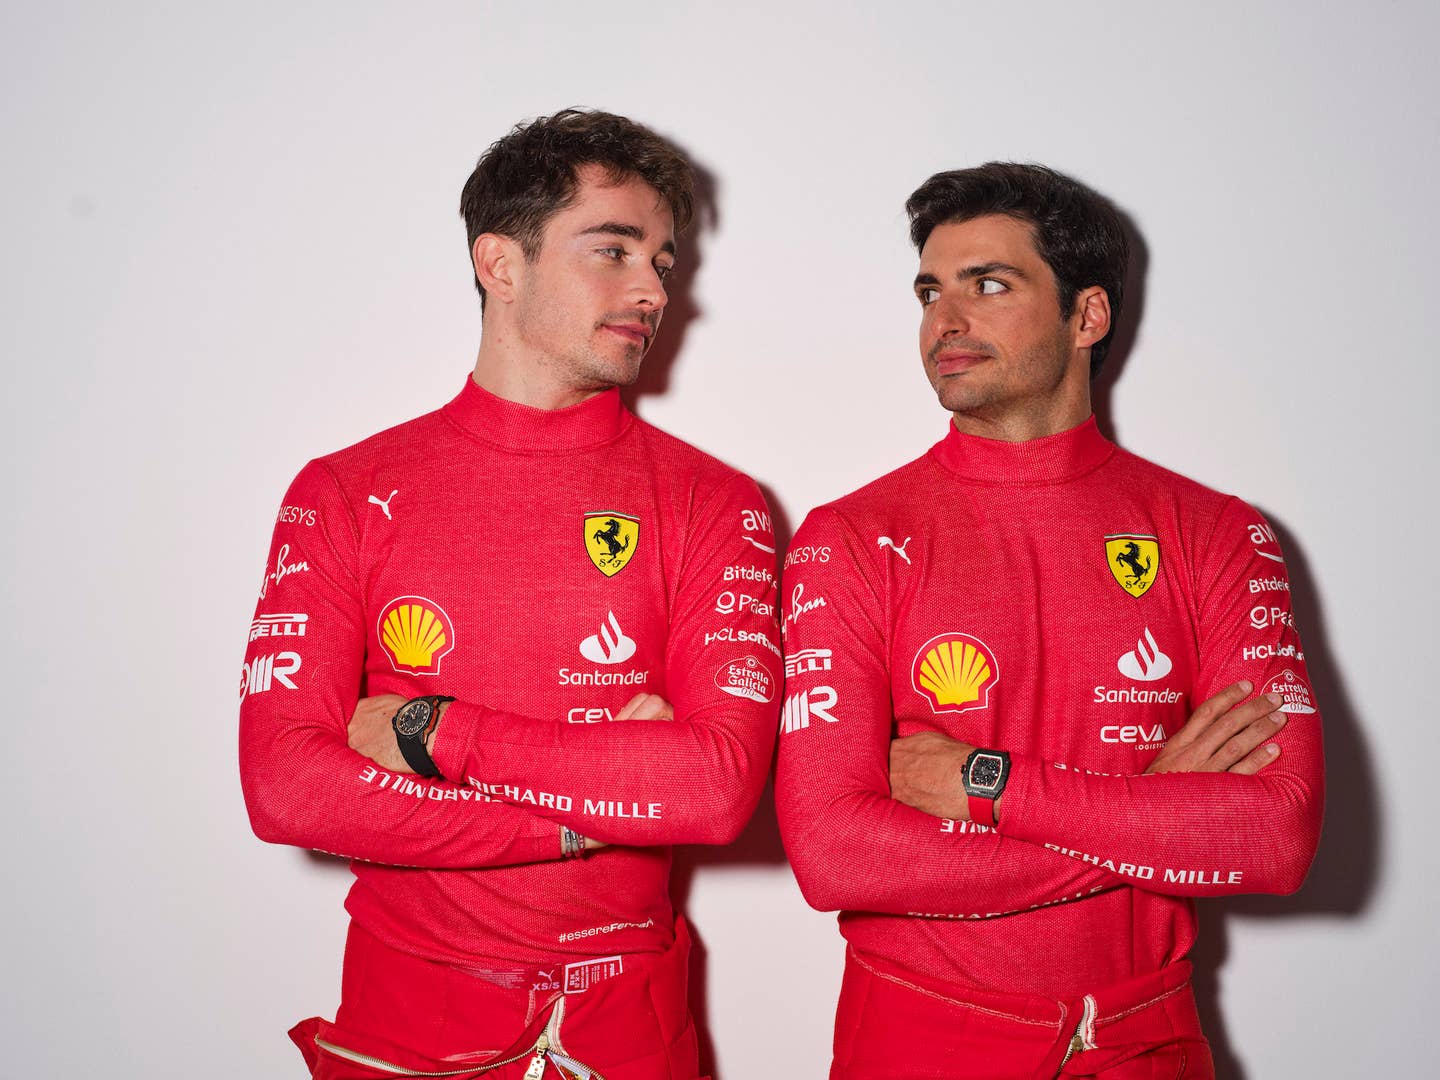 <em>Ferrari</em>